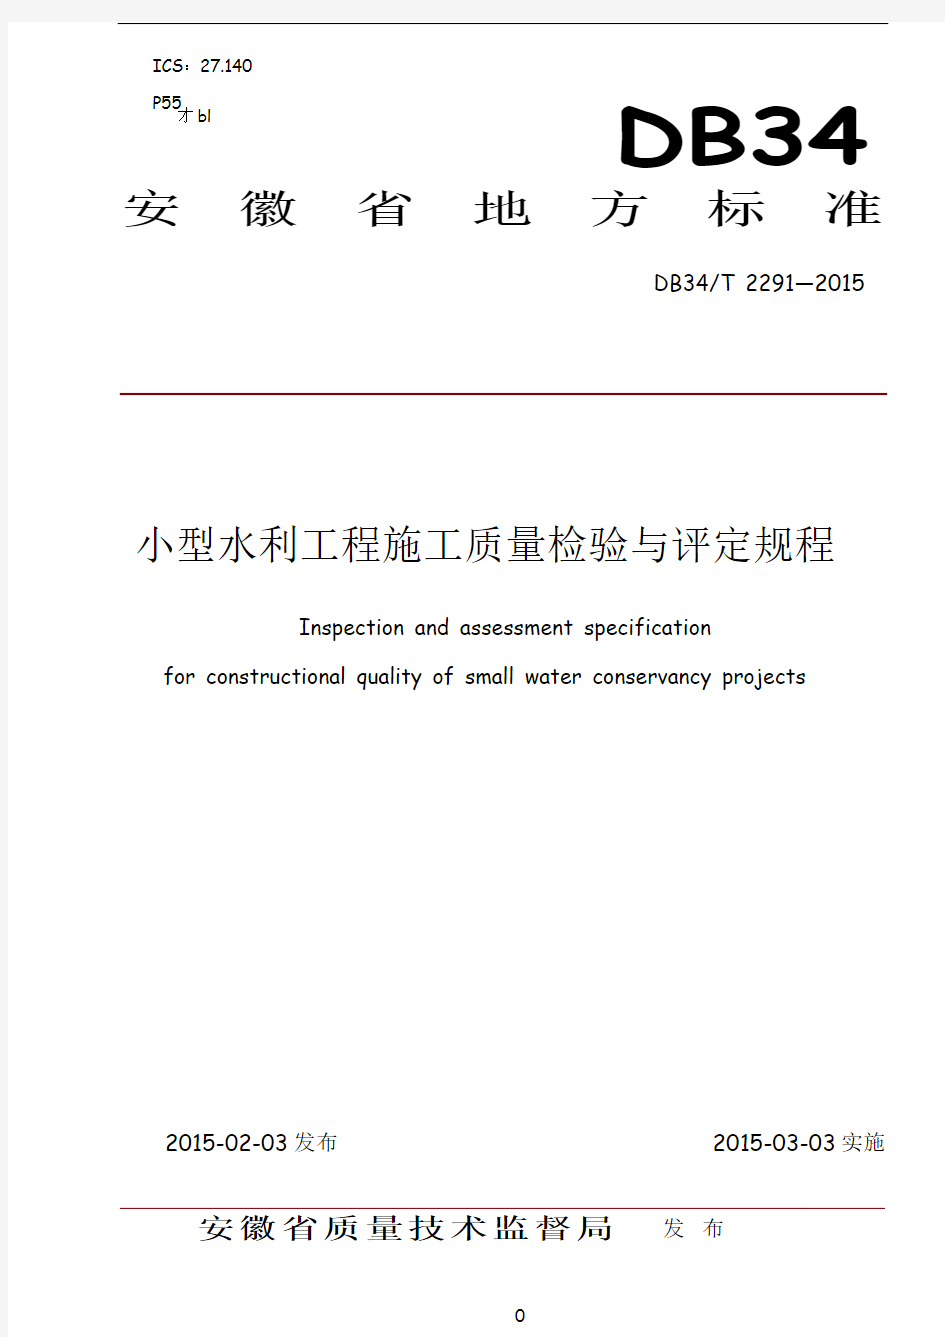 安徽省小型水利工程施工质量检验与评定规程(2015校验版)